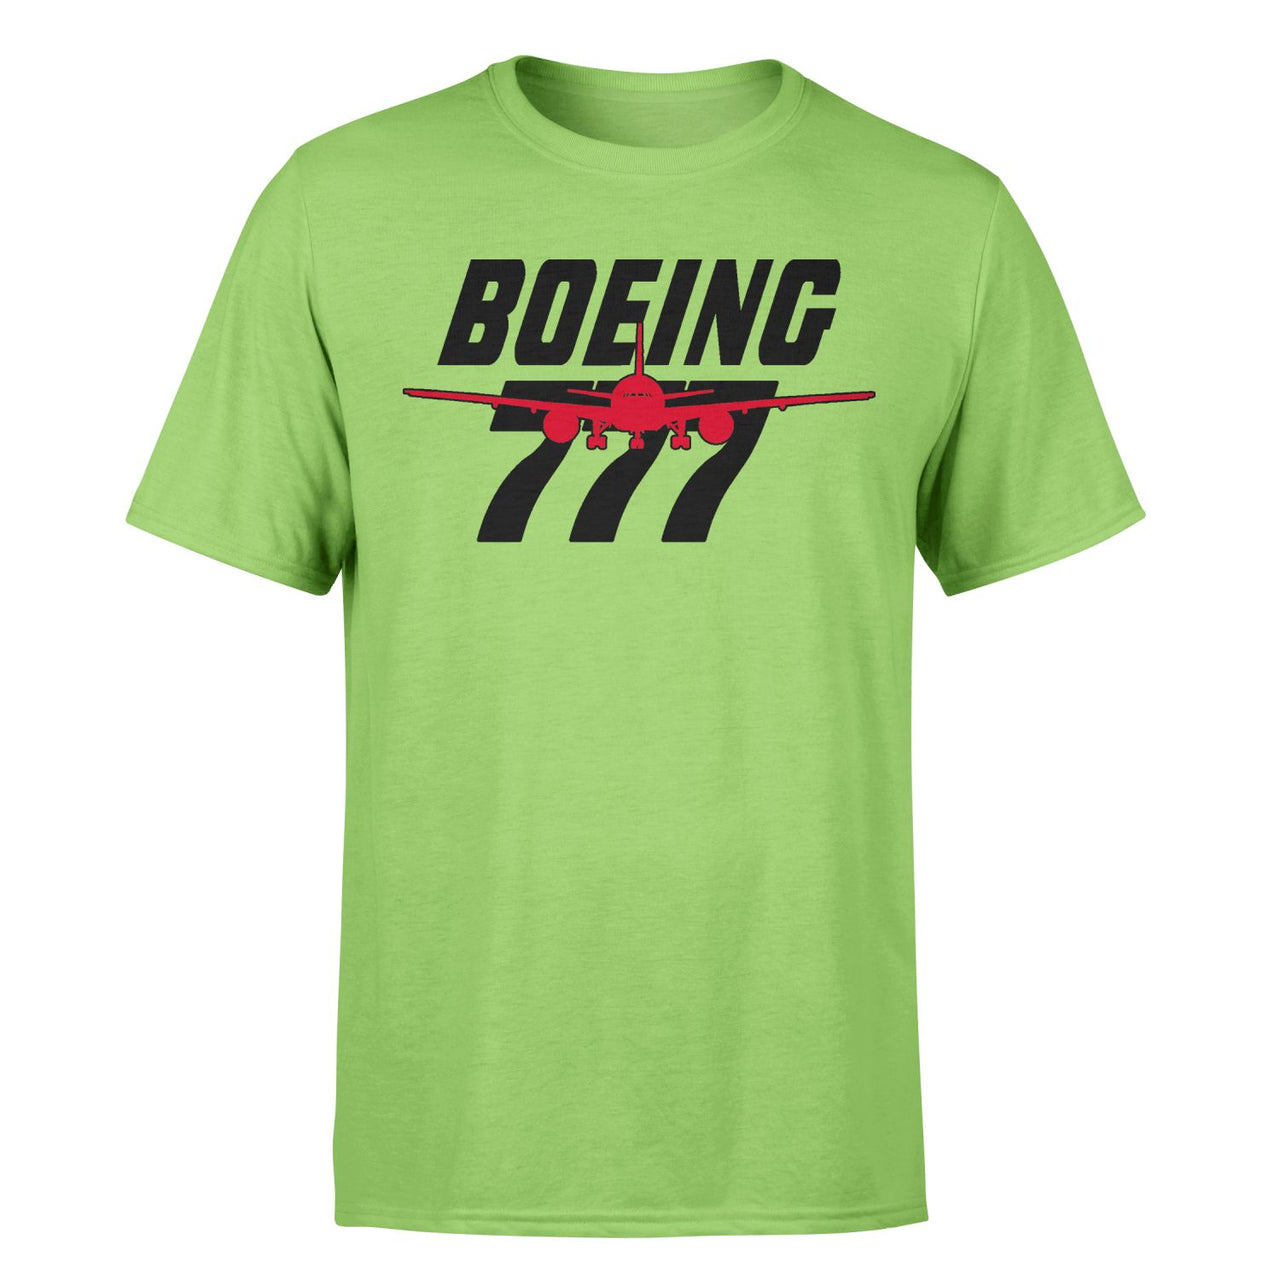 Amazing Boeing 777 Designed T-Shirts